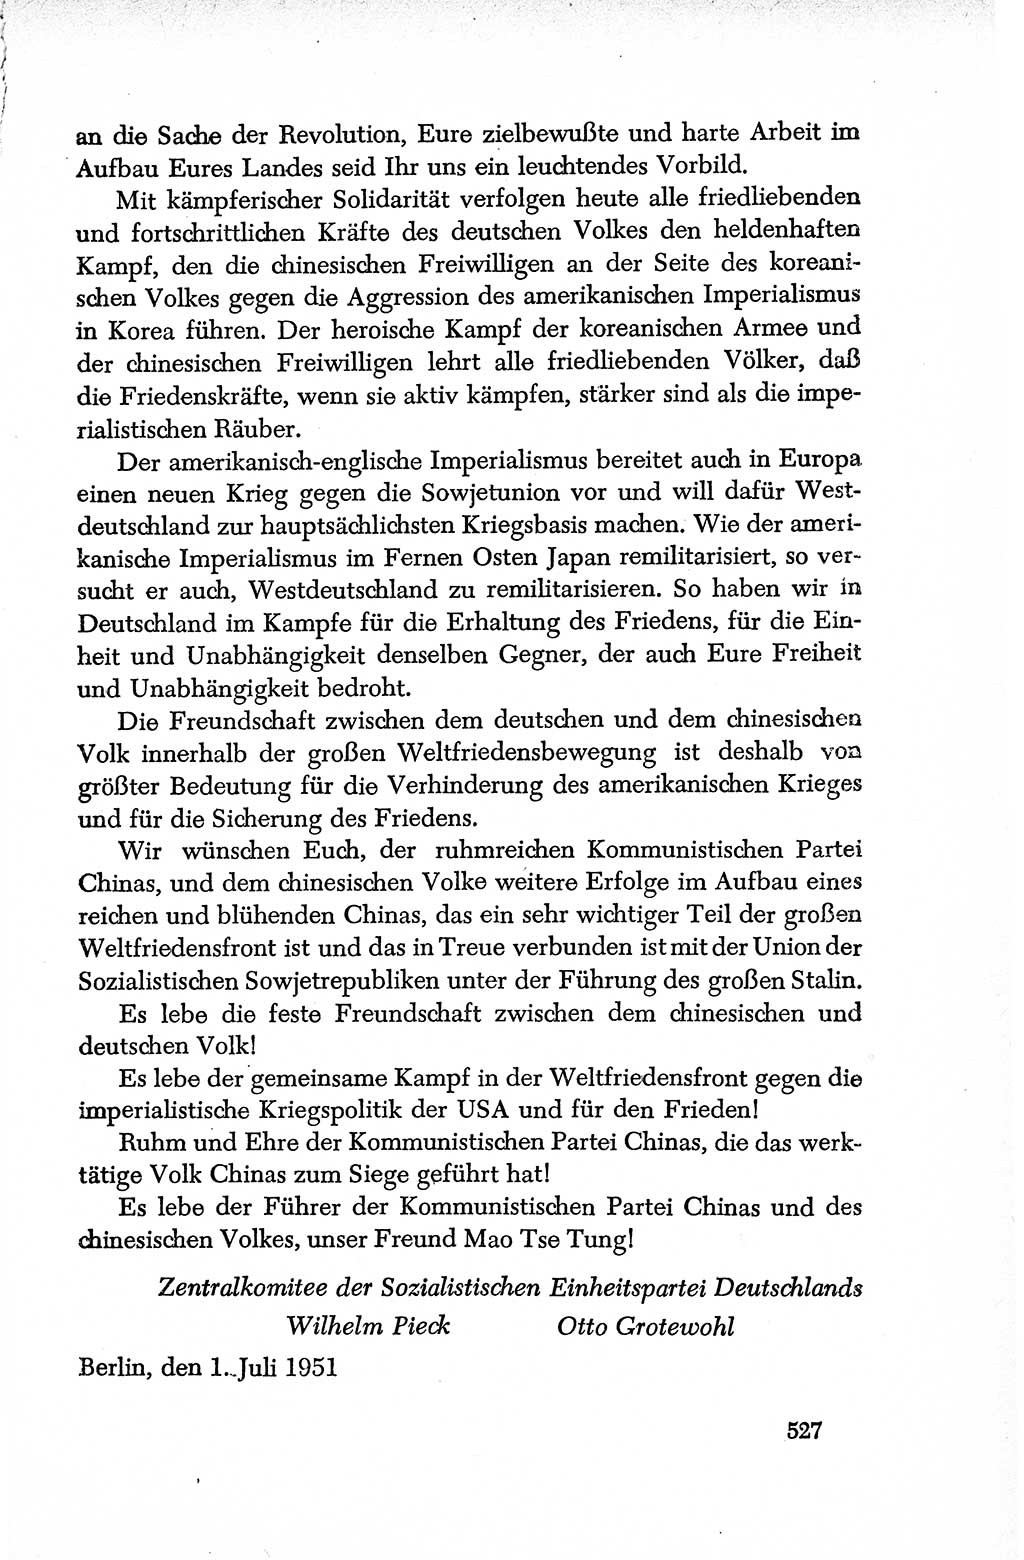 Dokumente der Sozialistischen Einheitspartei Deutschlands (SED) [Deutsche Demokratische Republik (DDR)] 1950-1952, Seite 527 (Dok. SED DDR 1950-1952, S. 527)